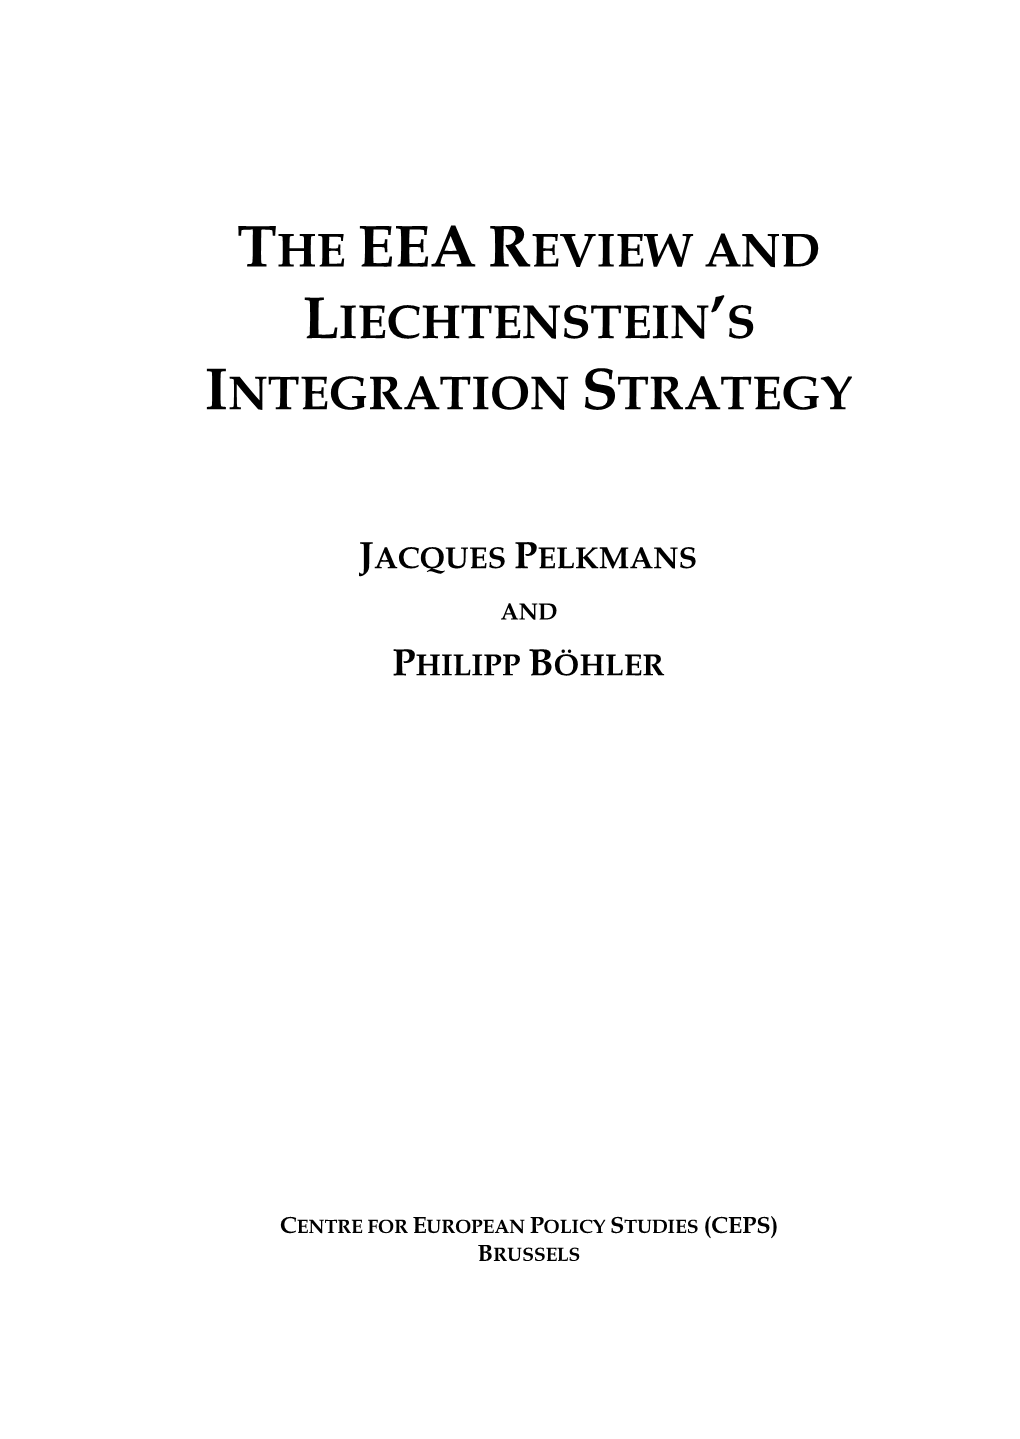 The Eea Review and Liechtenstein's Integration